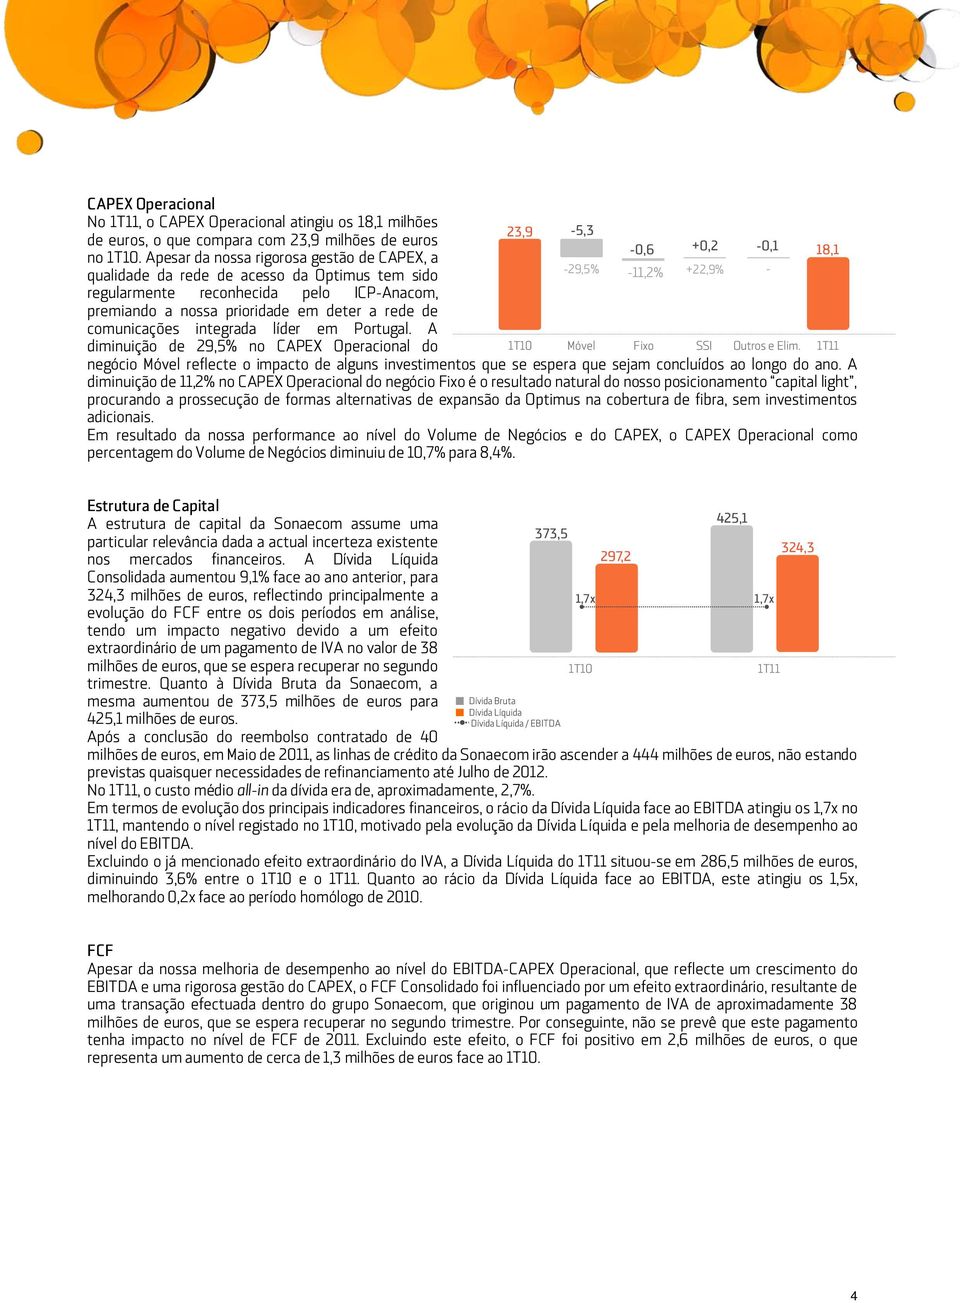 integrada líder em Portugal. A diminuição de 29,5% no CAPEX Operacional do negócio Móvel reflecte o impacto de alguns investimentos que se espera que sejam concluídos ao longo do ano.